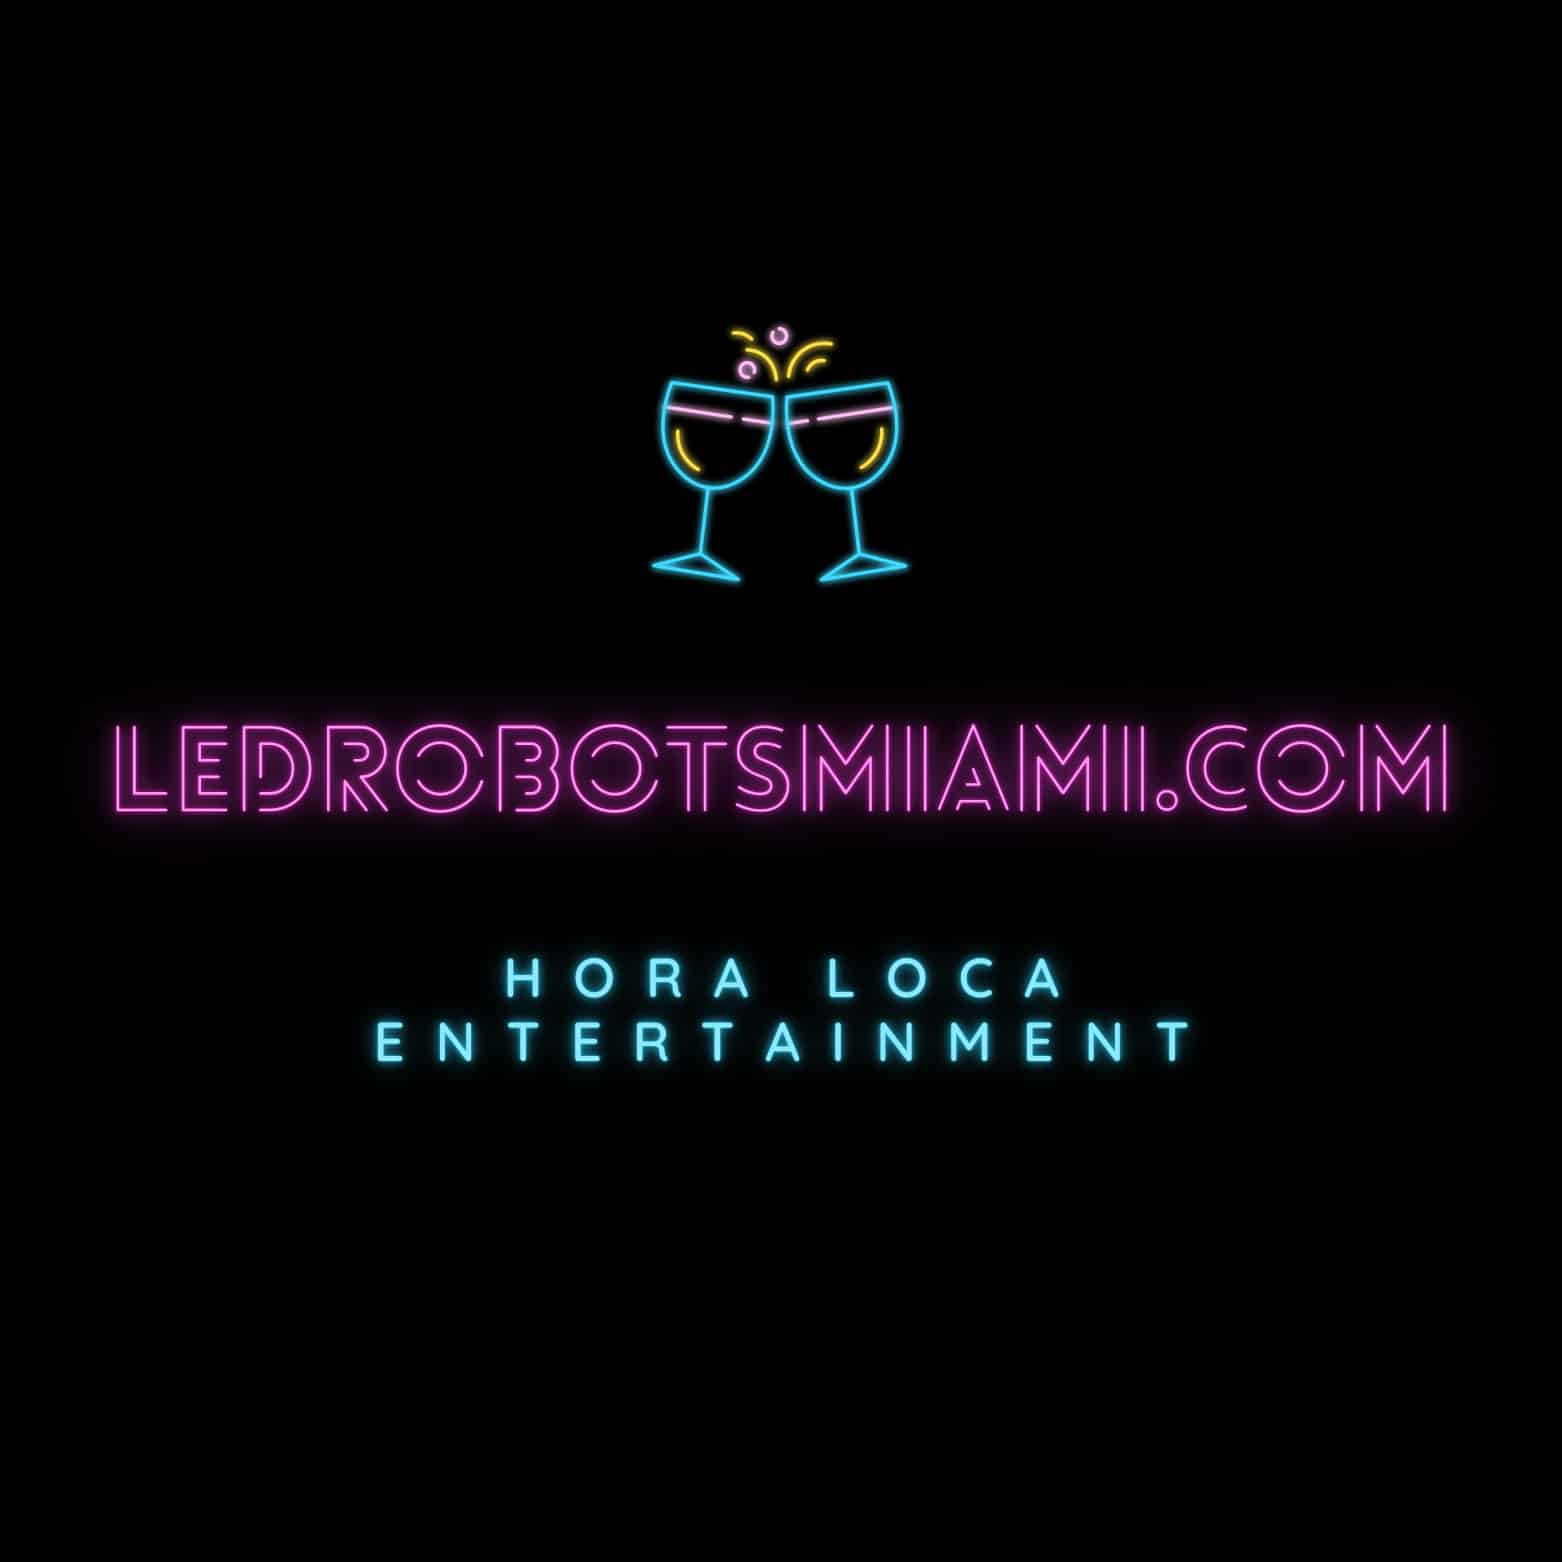 Hora Loca Entertainment Led Robots Miami